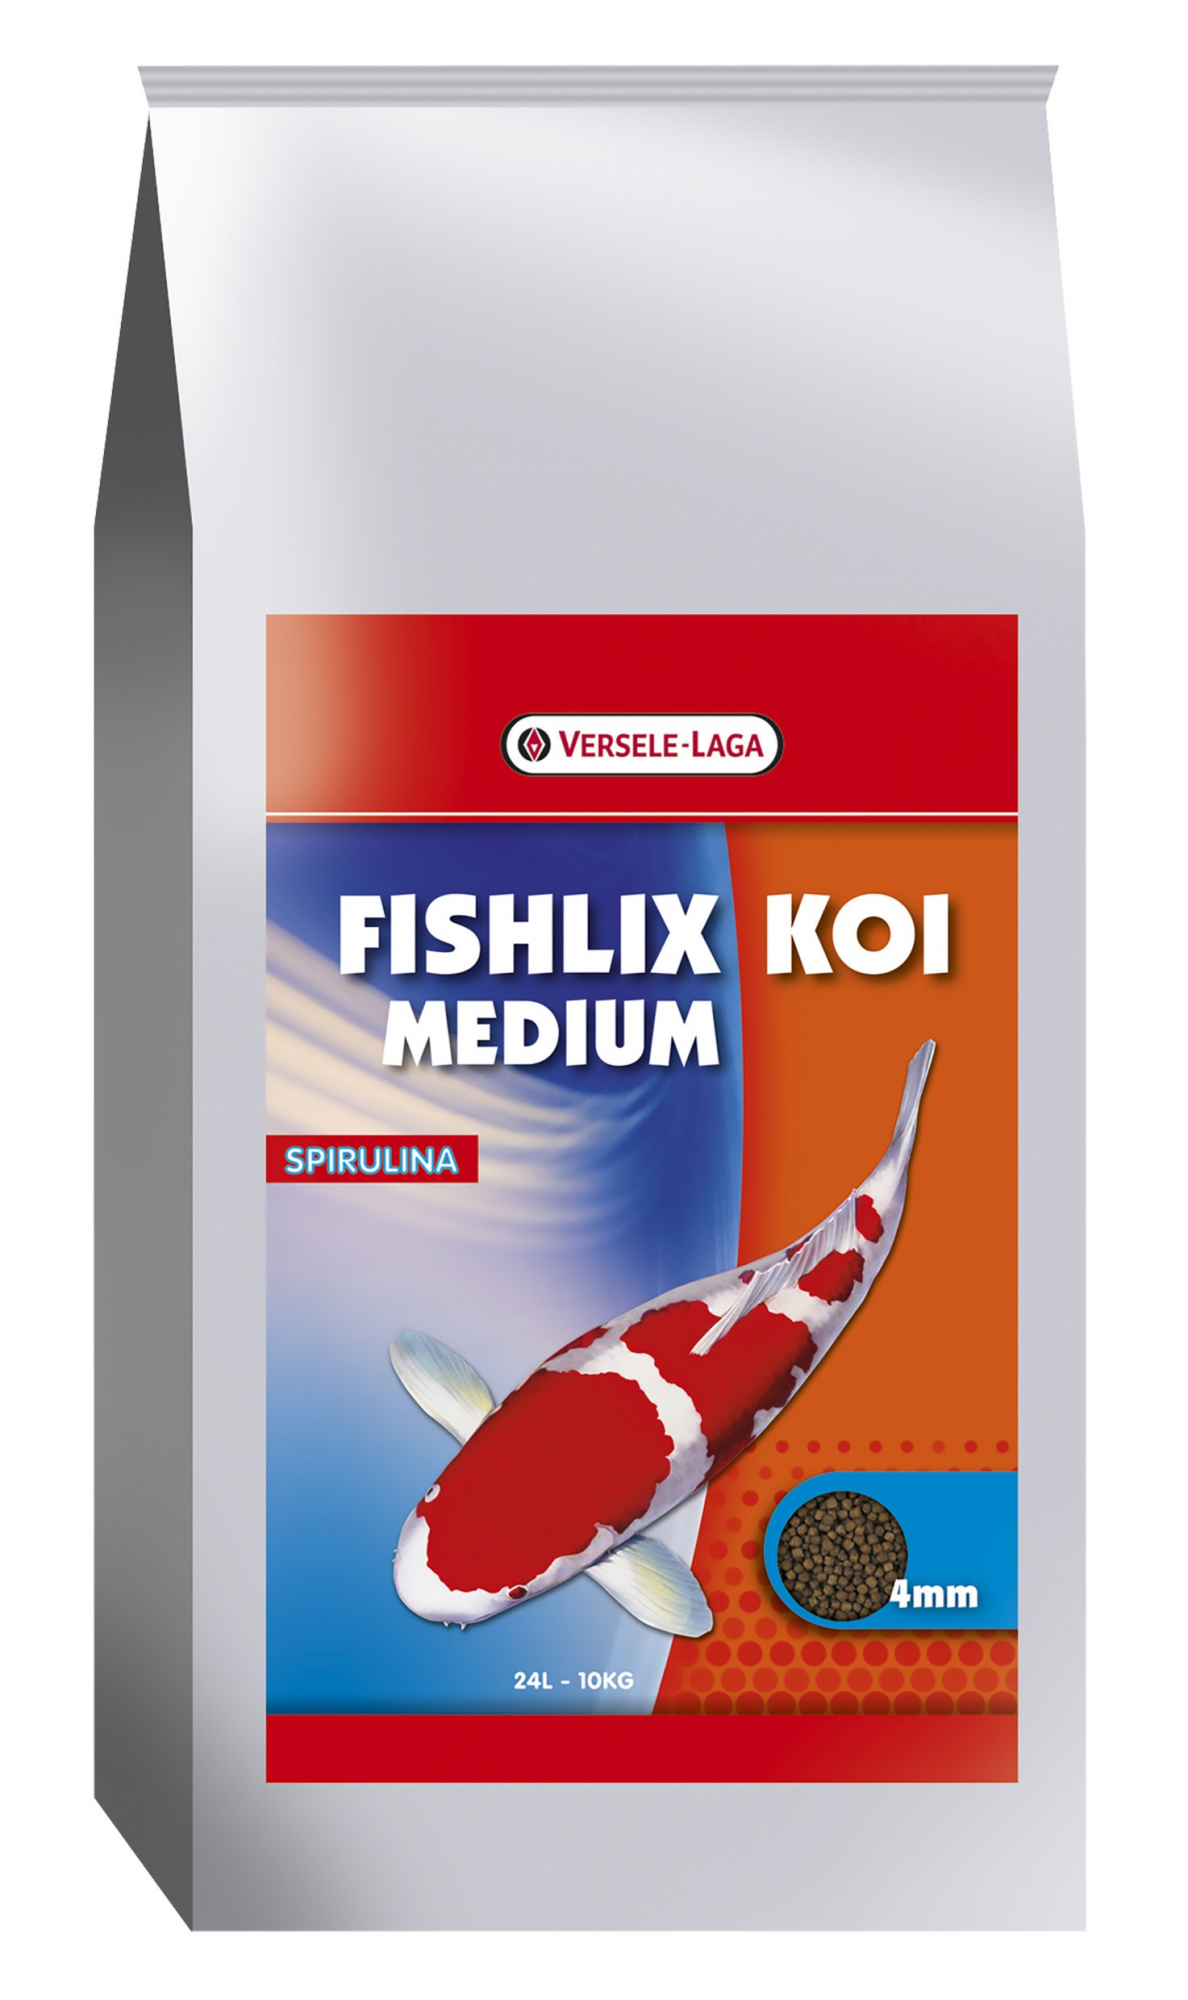 Fishlix Koi Medium 4 mm Granulés flottants pour Koïs